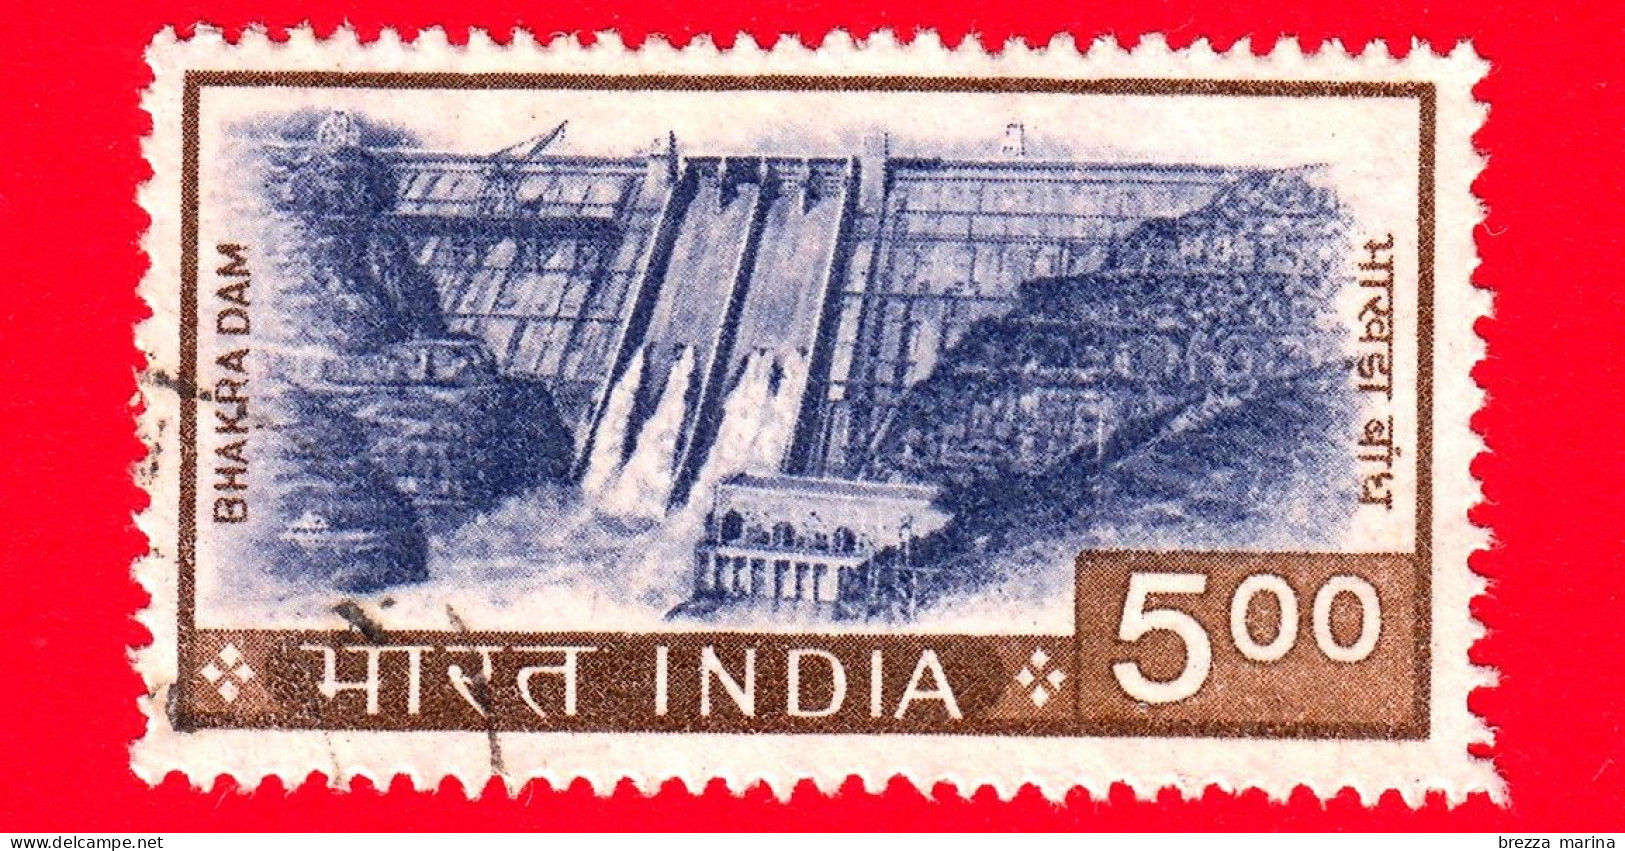 INDIA - Usato - 1976 - Diga Di Bhakar, Punjab - 5.00 - Used Stamps